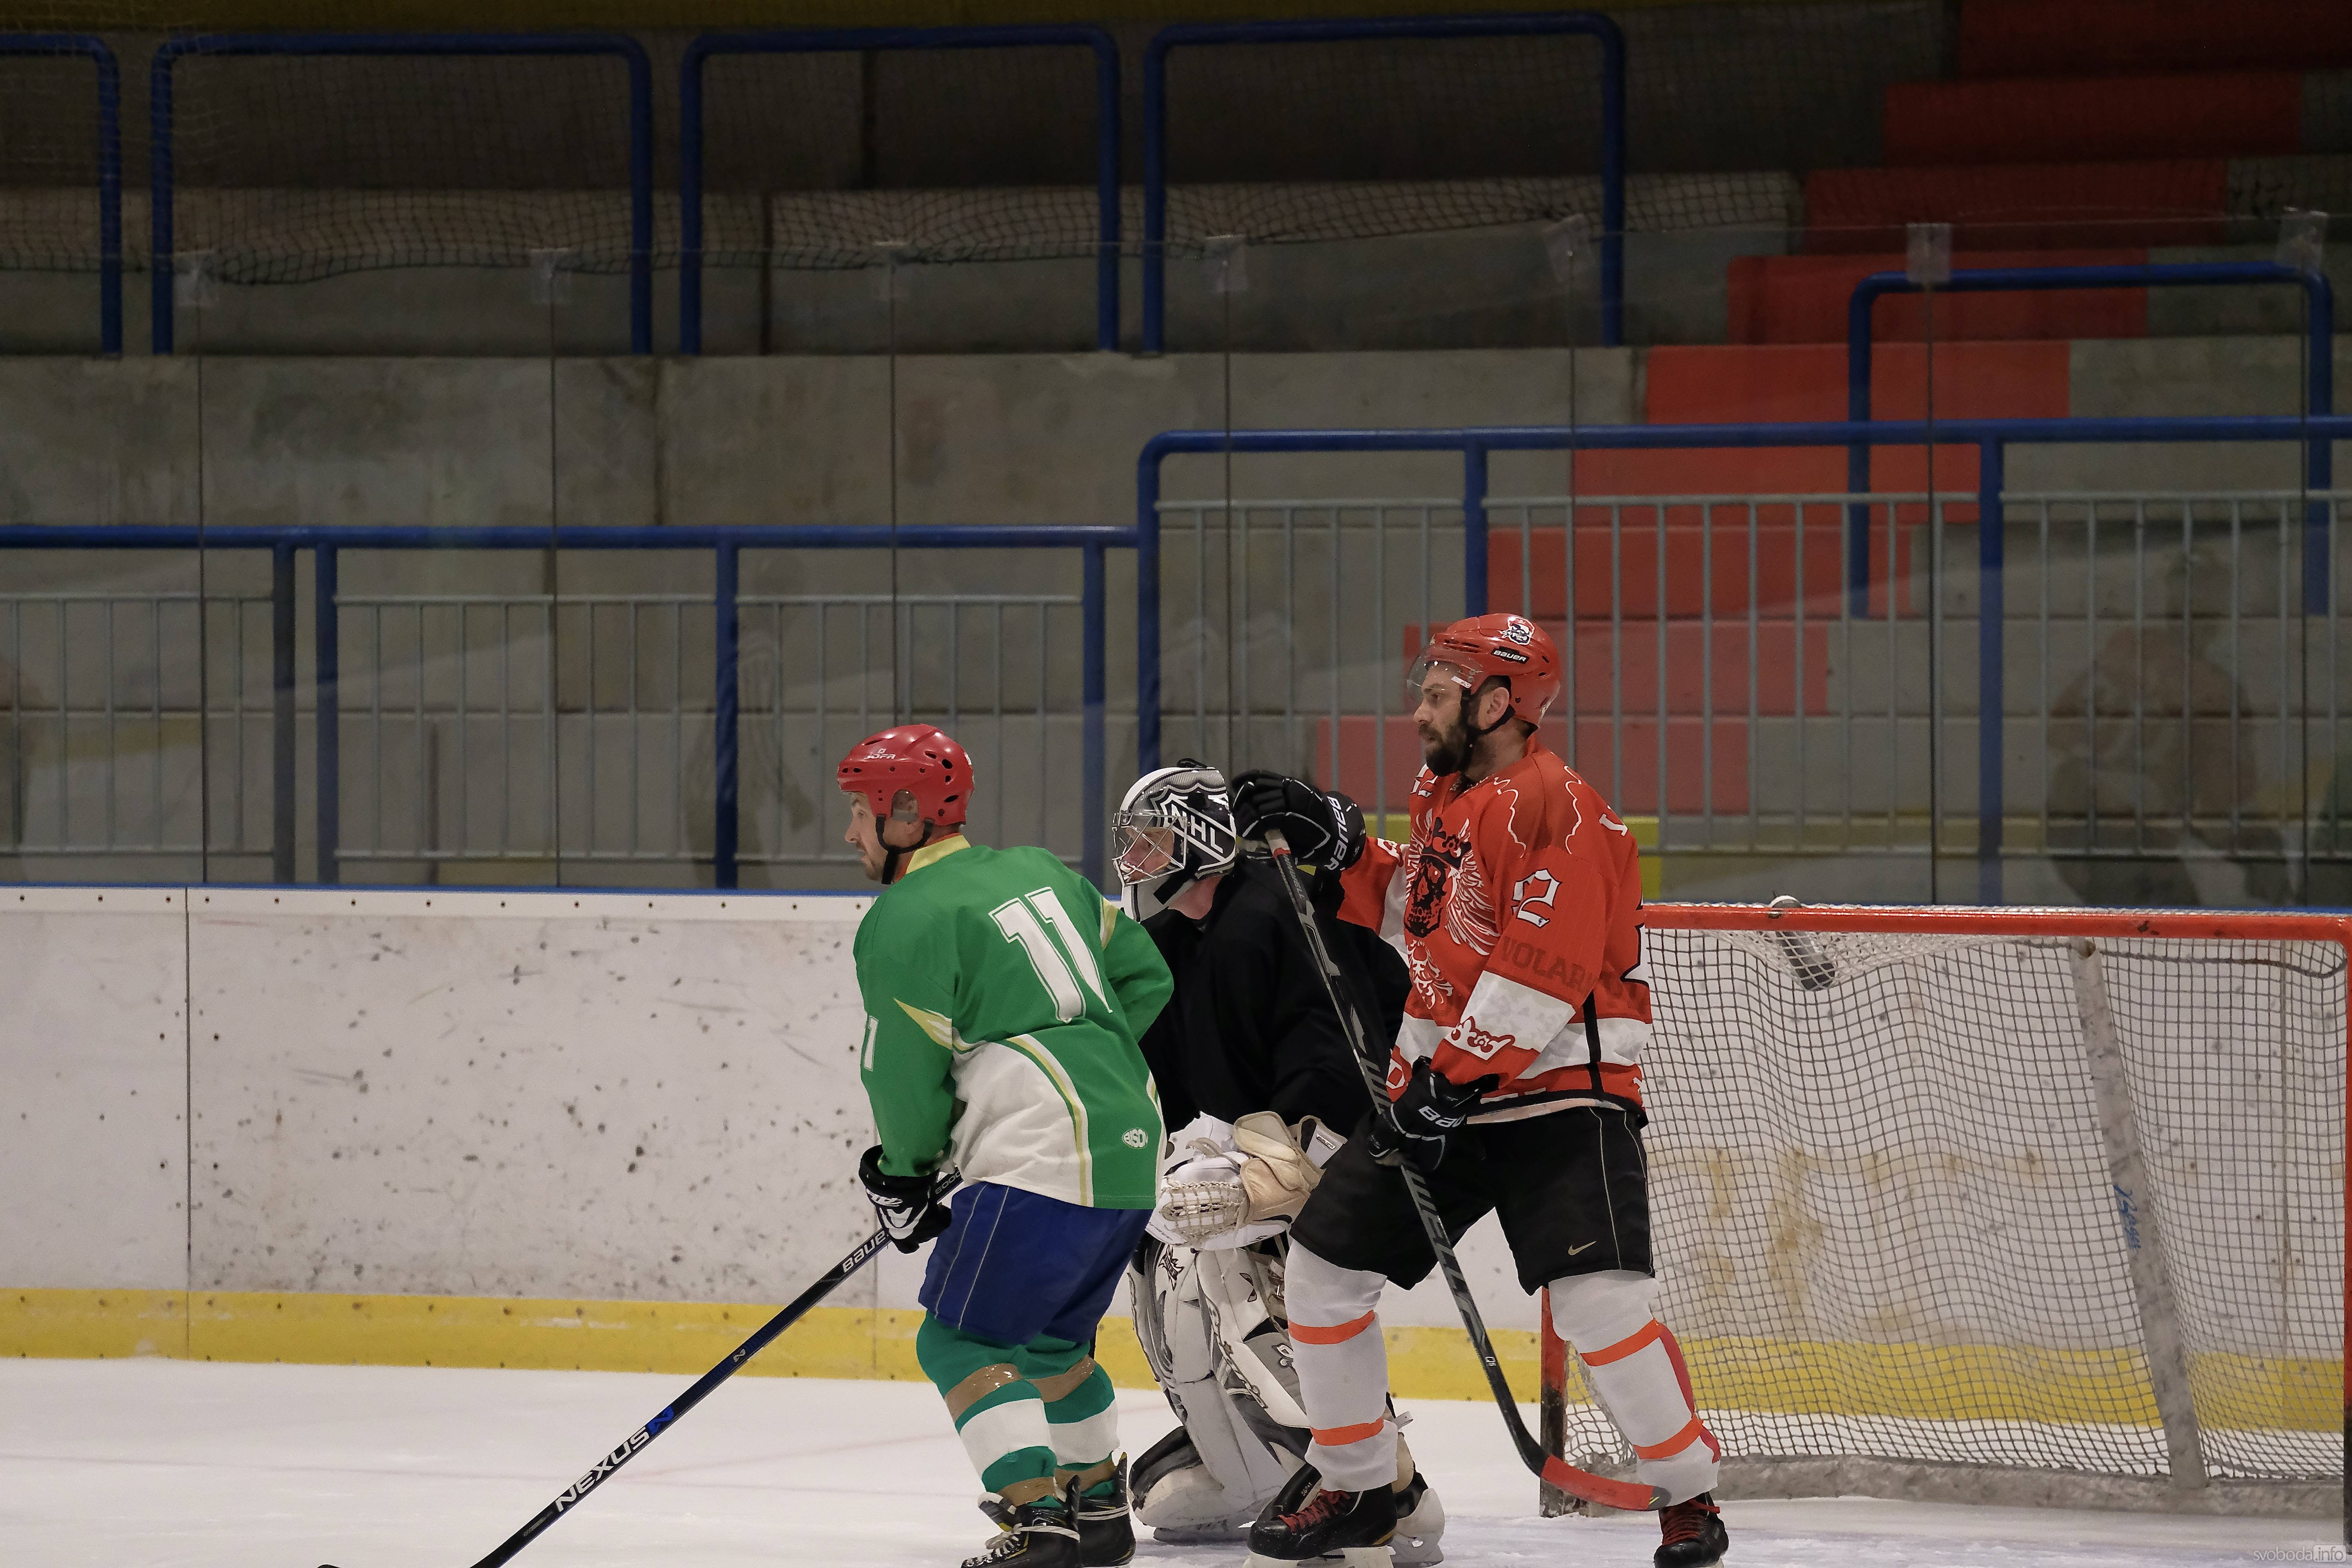 Foto: Po pauze se na zimní stadionu v Kutné Hoře opět hrají zápasy AKHL